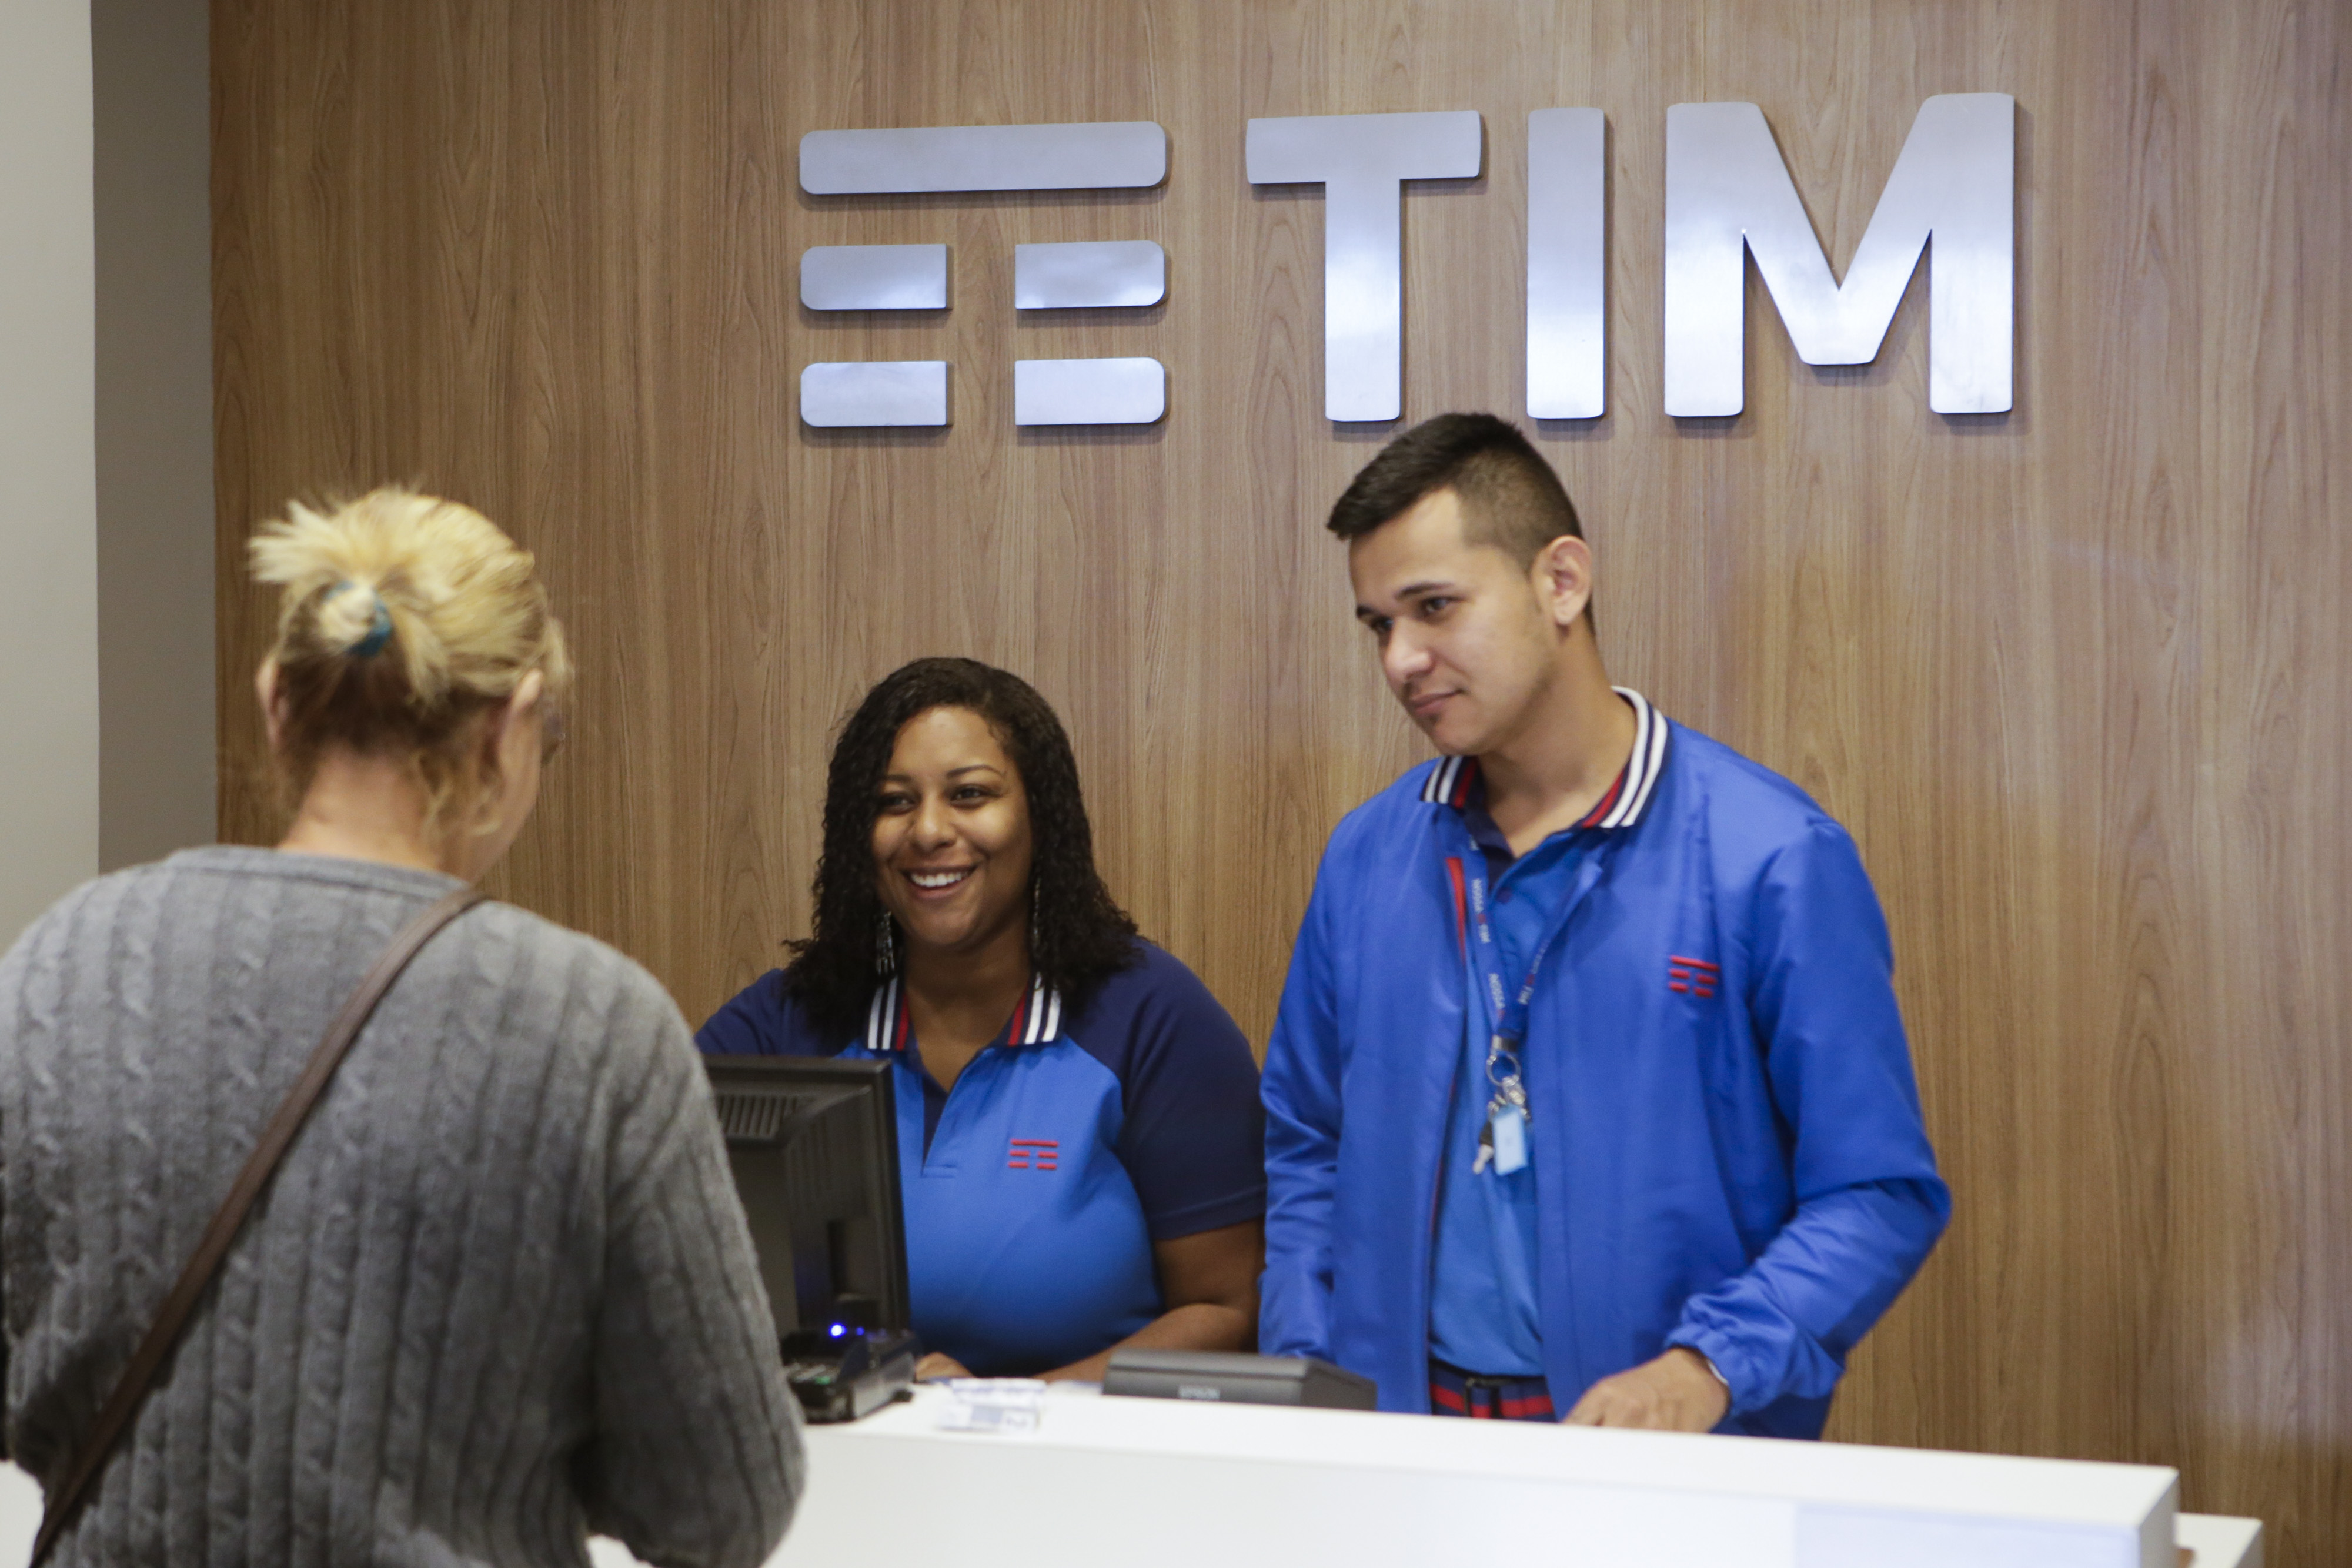 TIM aumenta lucro para R$ 423 milhões no segundo trimestre